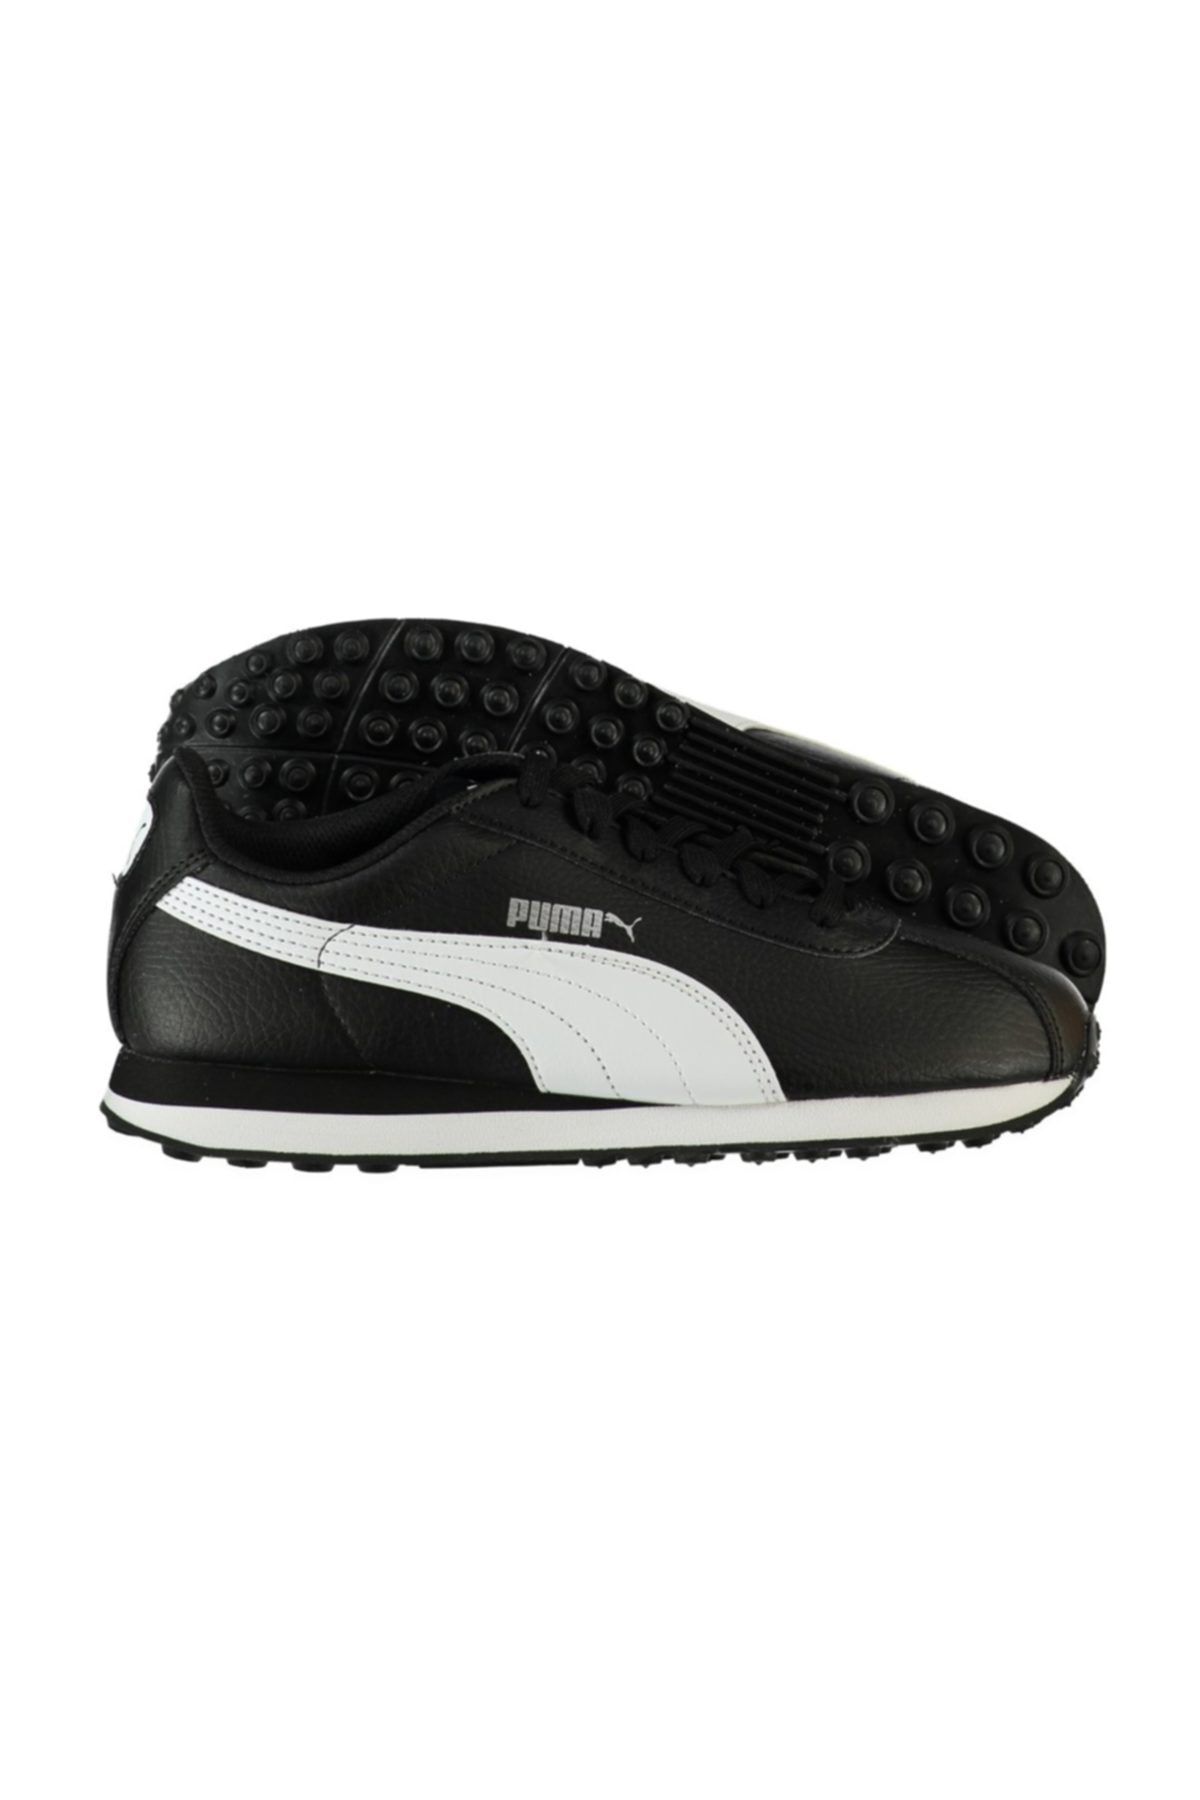 Puma Kadın Spor Ayakkabı -  Turin Jr black-white